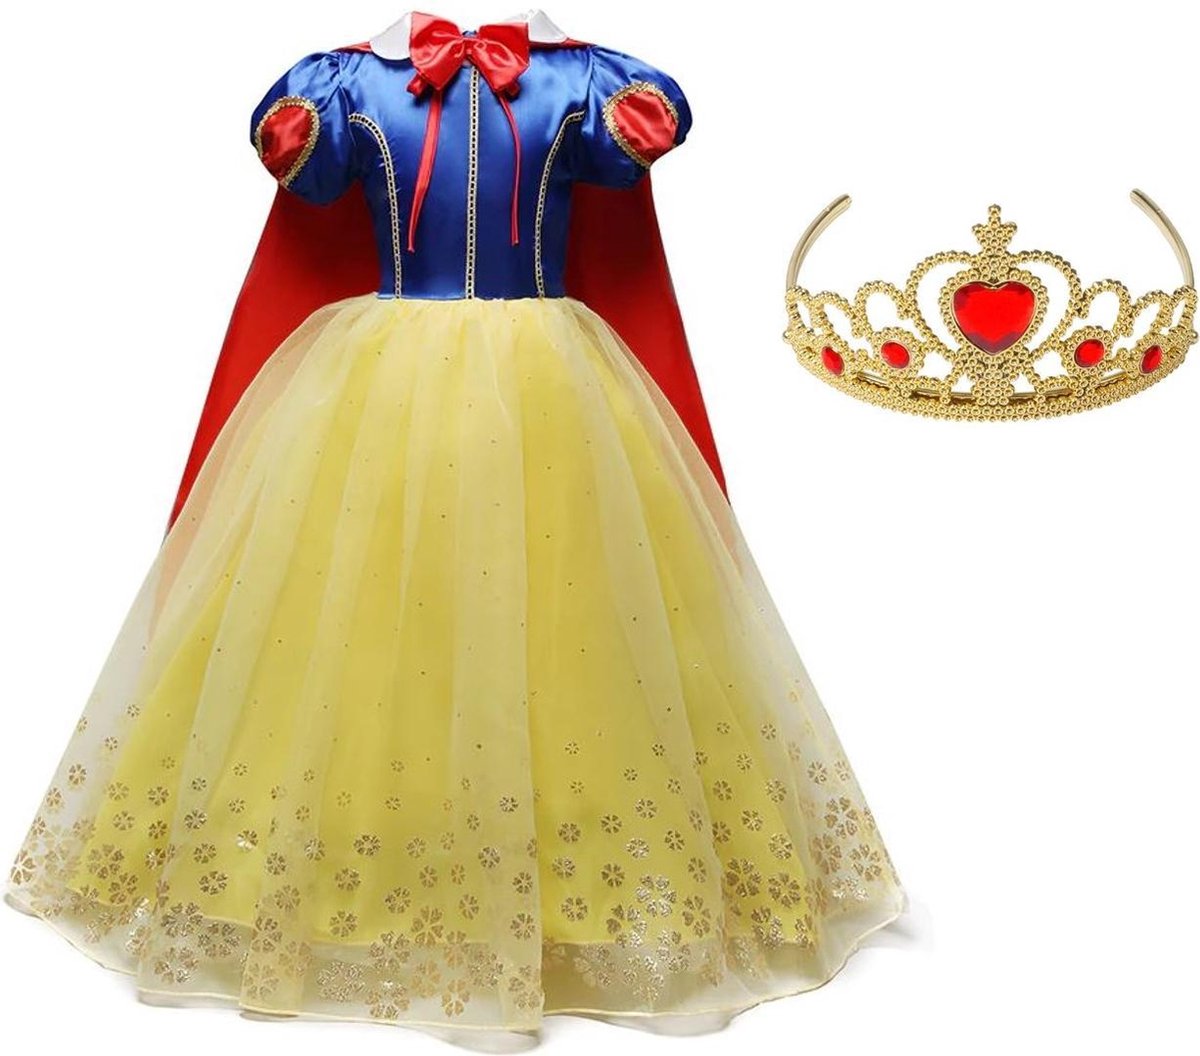 Sneeuwwitje jurk Prinsessen jurk Luxe sprookje 128-134 (140) + cape en kroon verkleedkleding